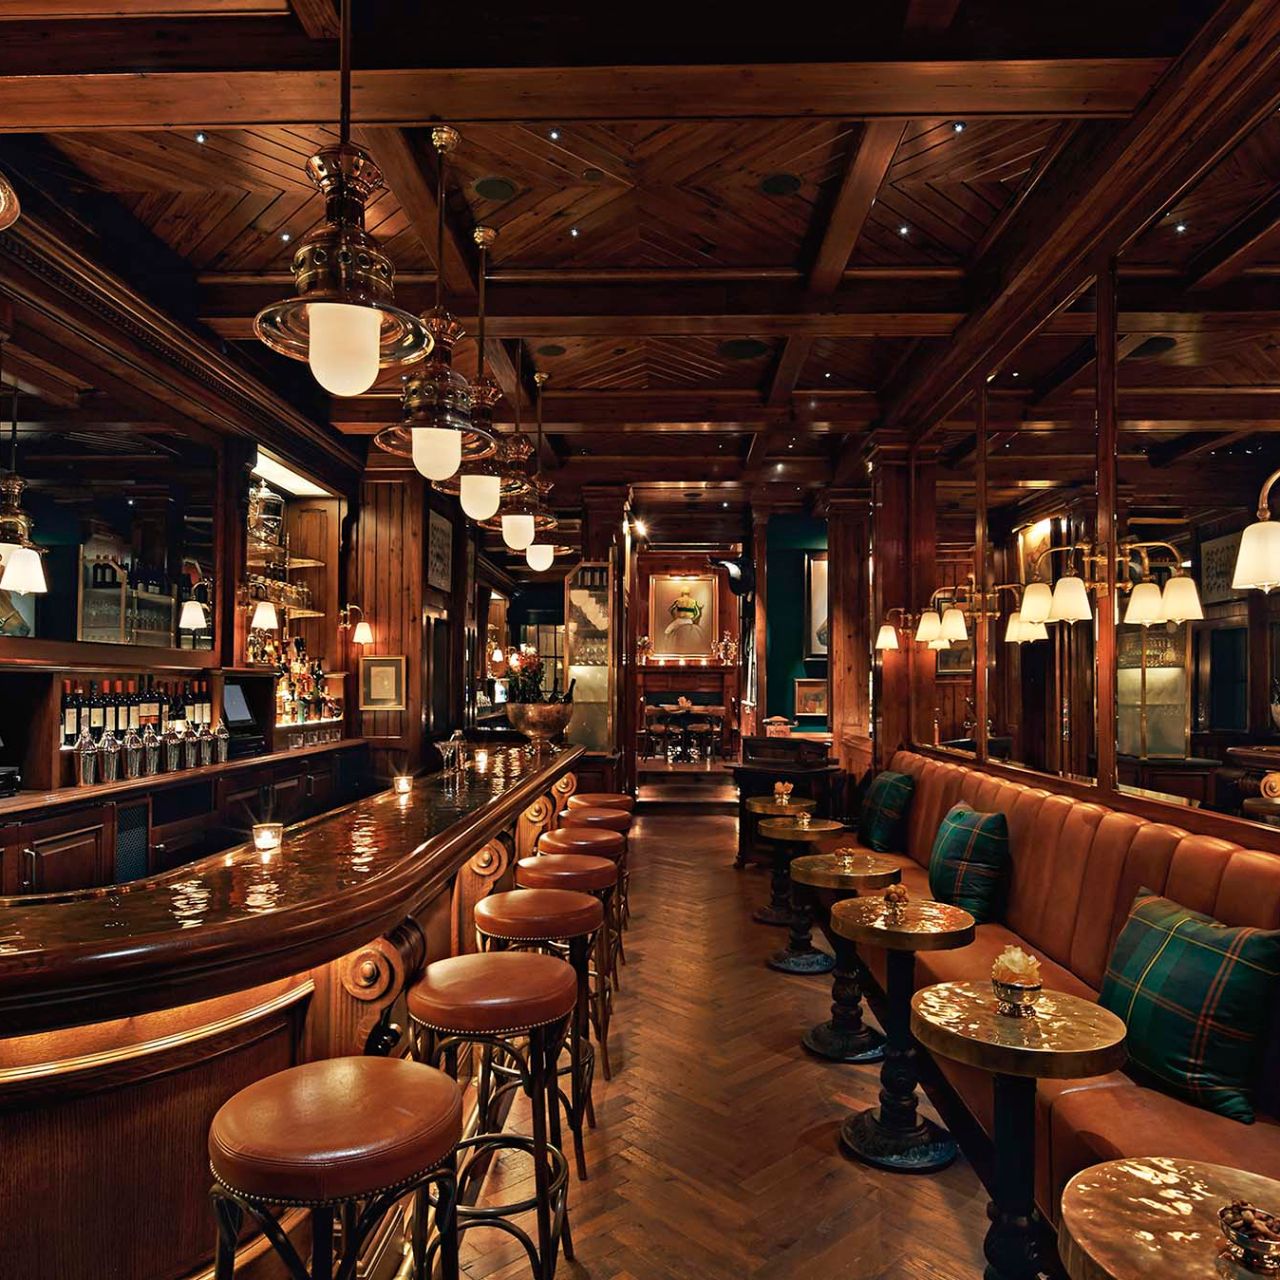 The Polo Bar Restaurant - New York, NY